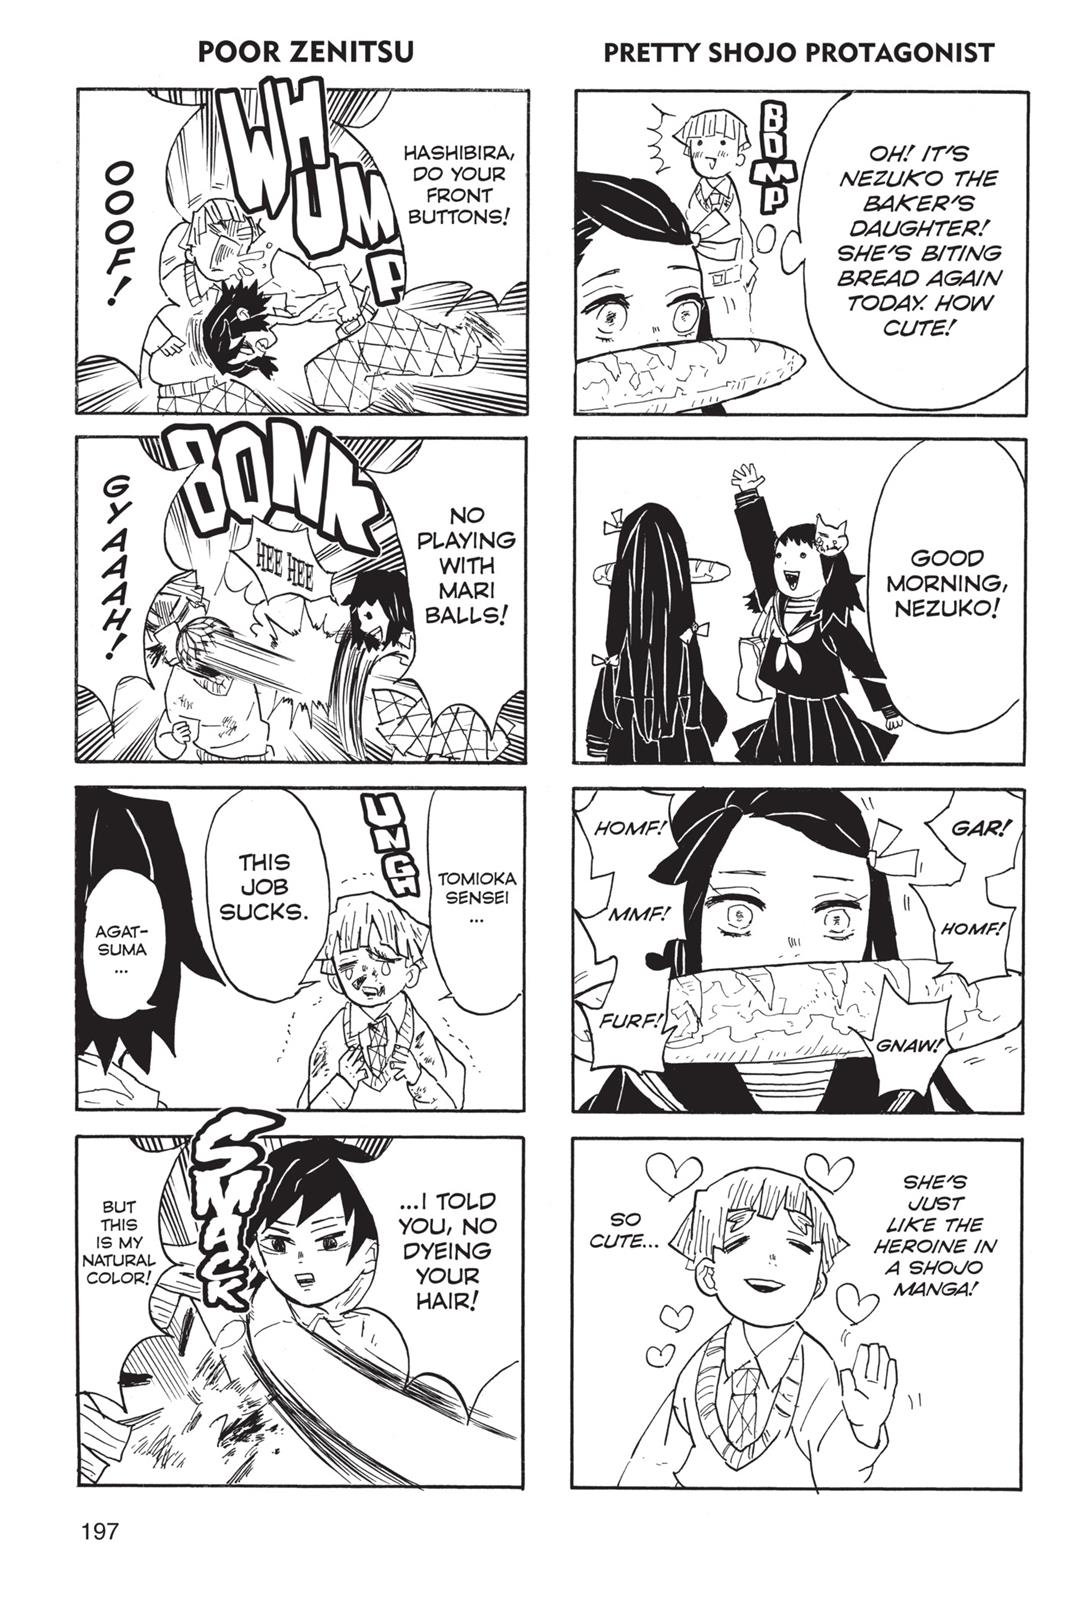 Demon Slayer Manga Manga Chapter - 52 - image 13